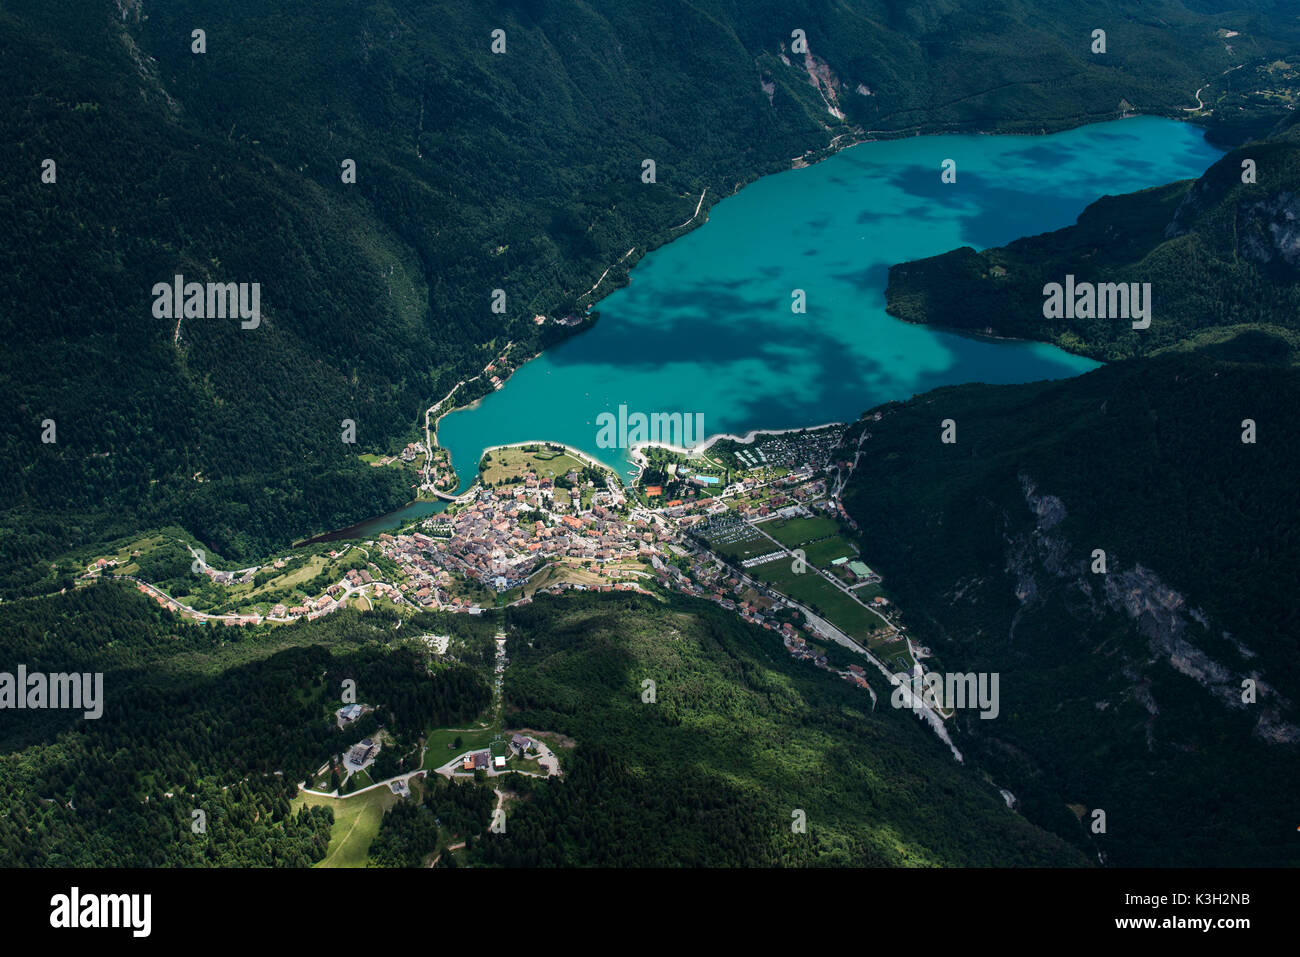 Cerrar Molvenersee Molveno, bañera orilla, acampando en el lago, la montaña de madera, vista aérea, Trentino, Italia Foto de stock